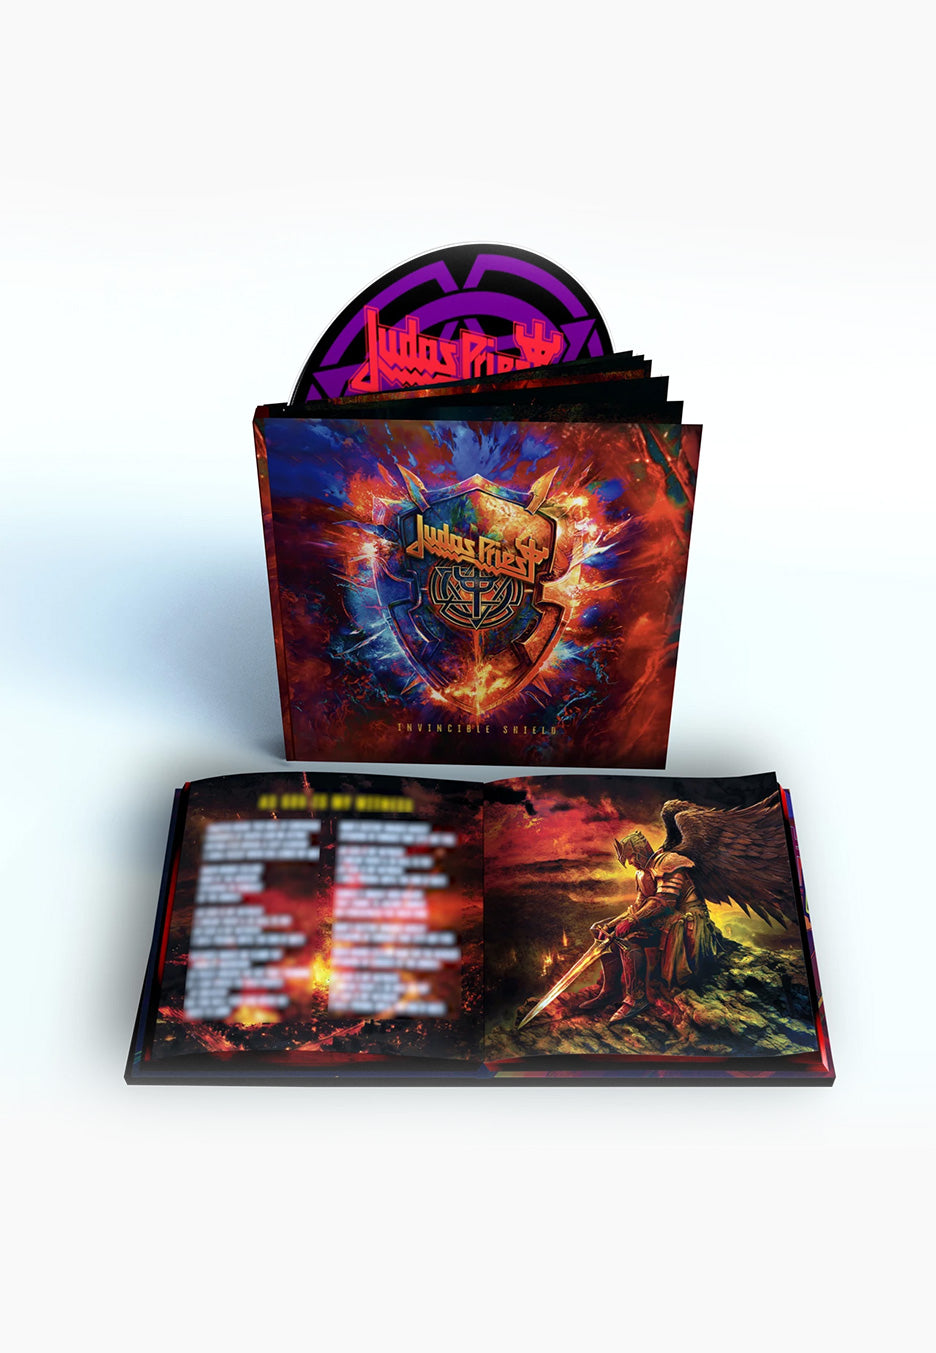 Judas Priest - Invincible Shield (Deluxe Edition) - Mediabook CD